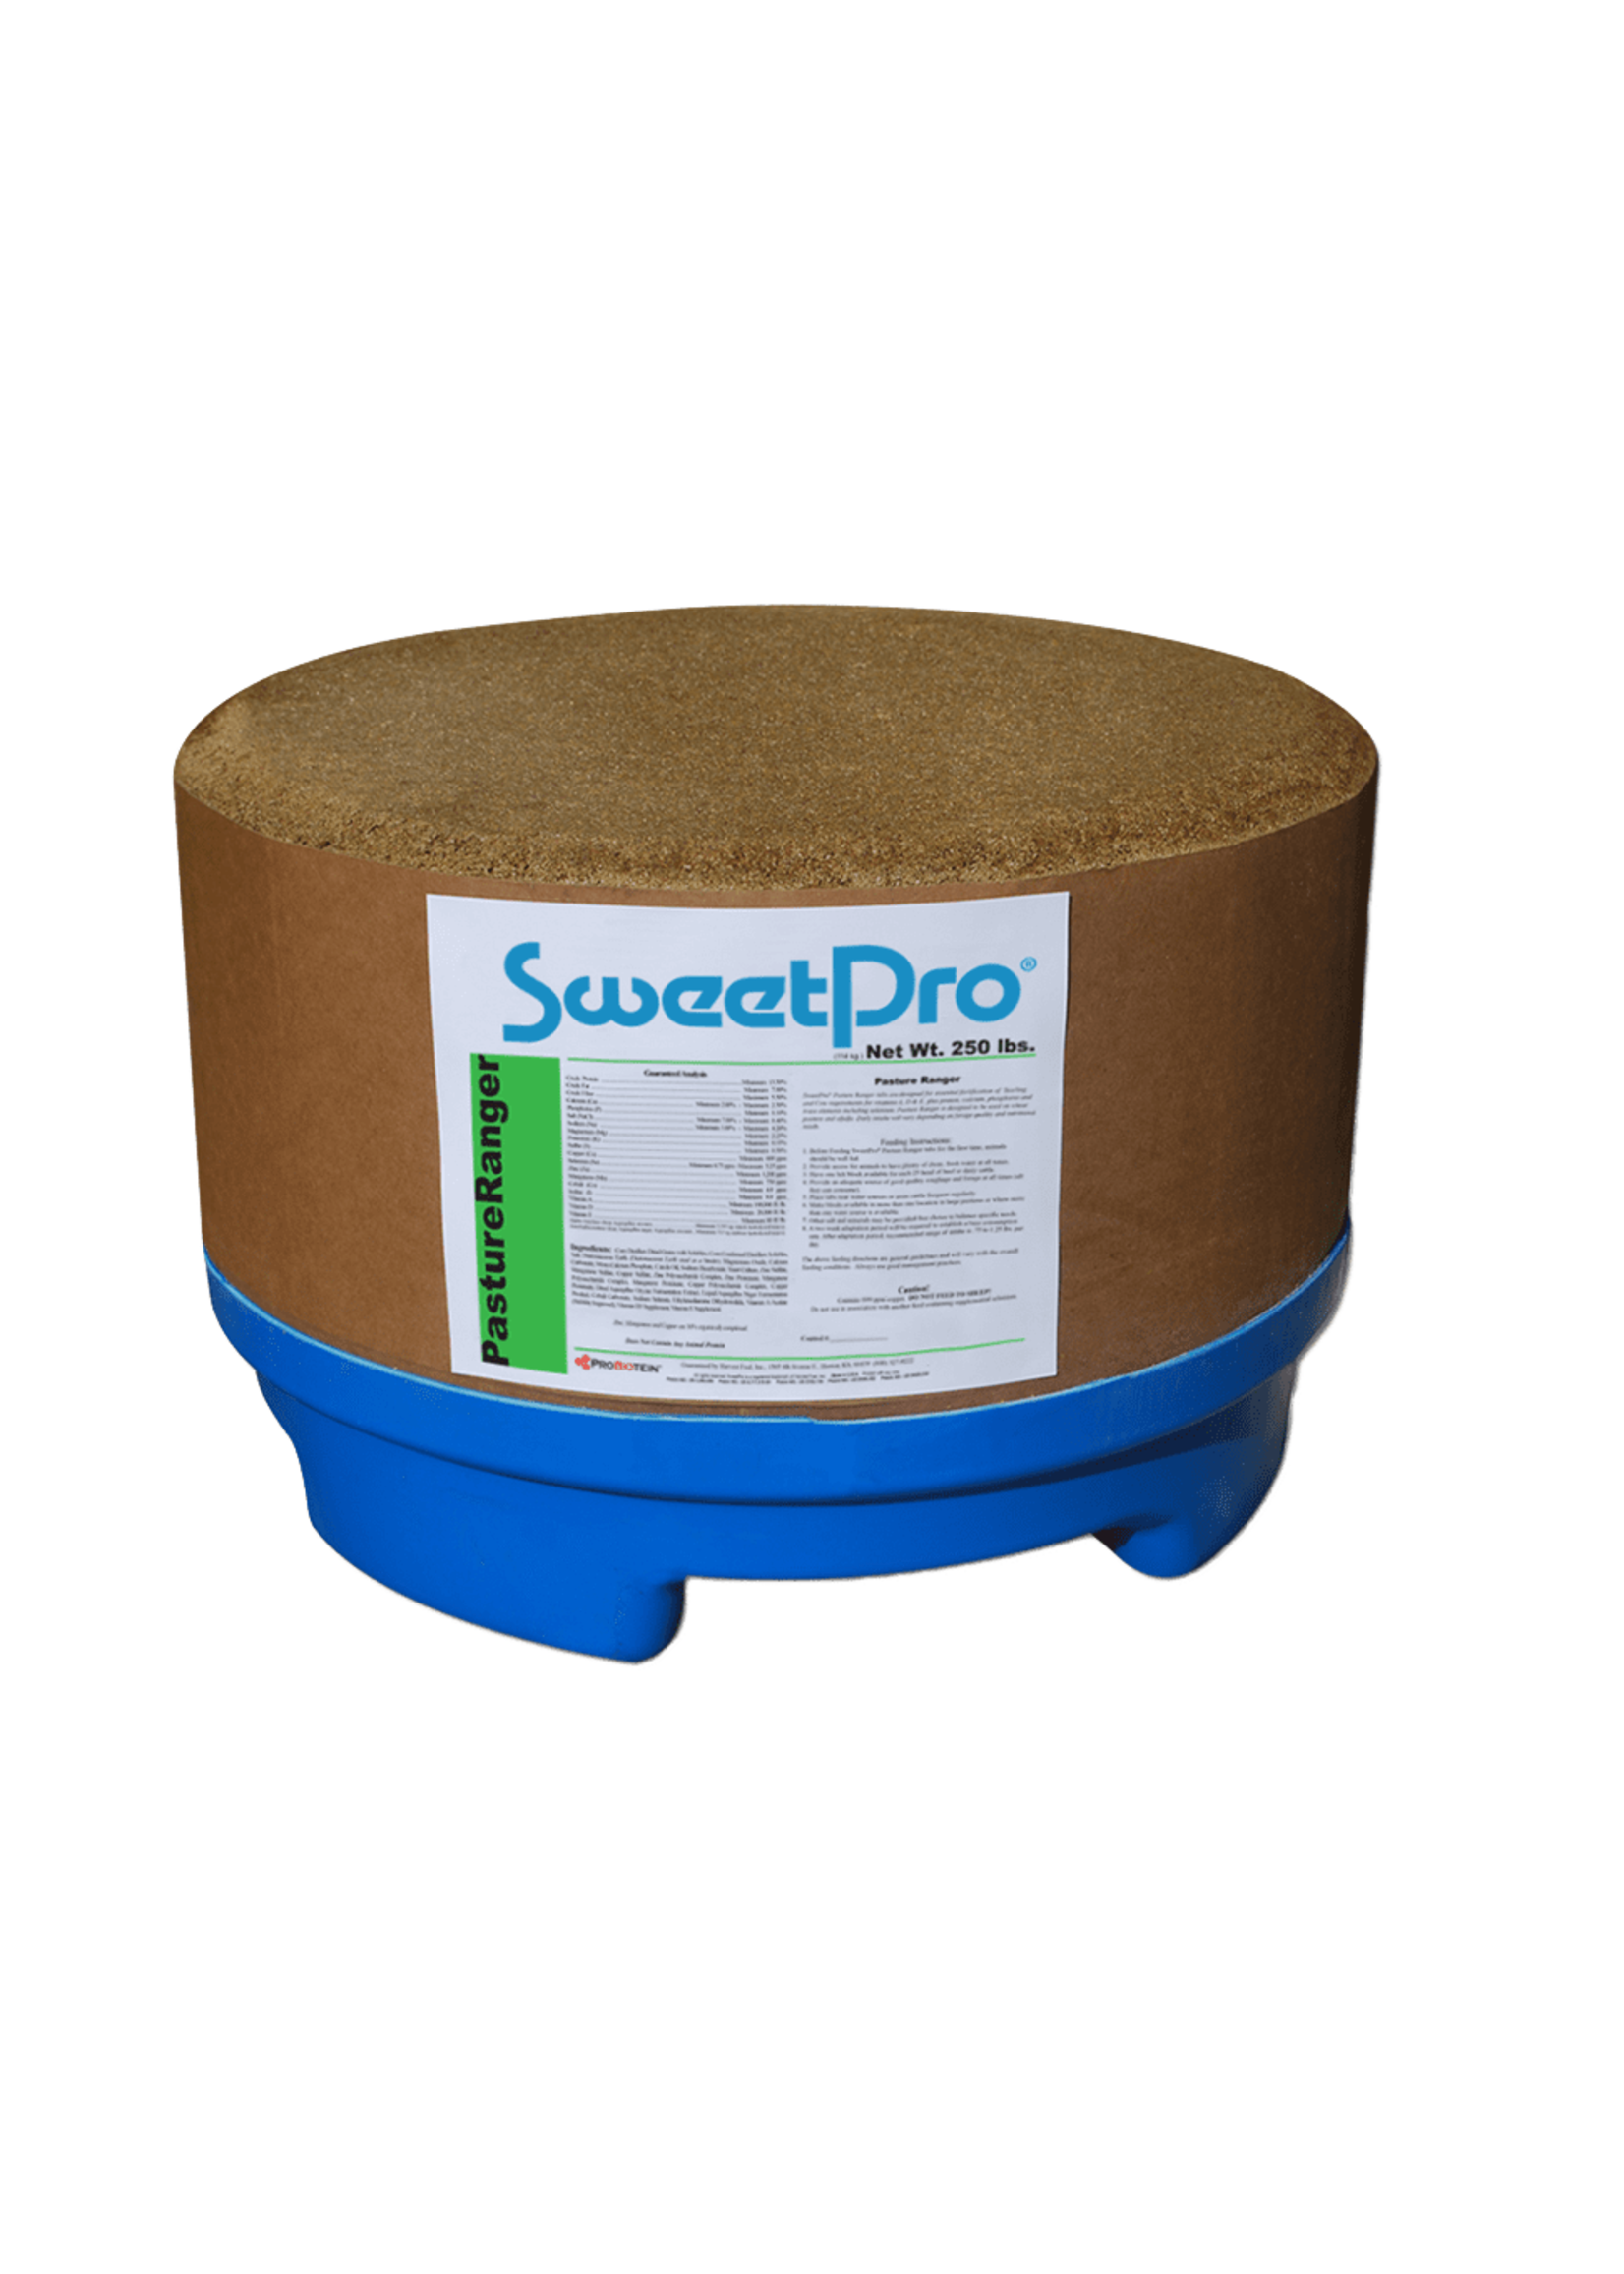 Sweet Pro SweetPro - Pasture Ranger 250lb Tub